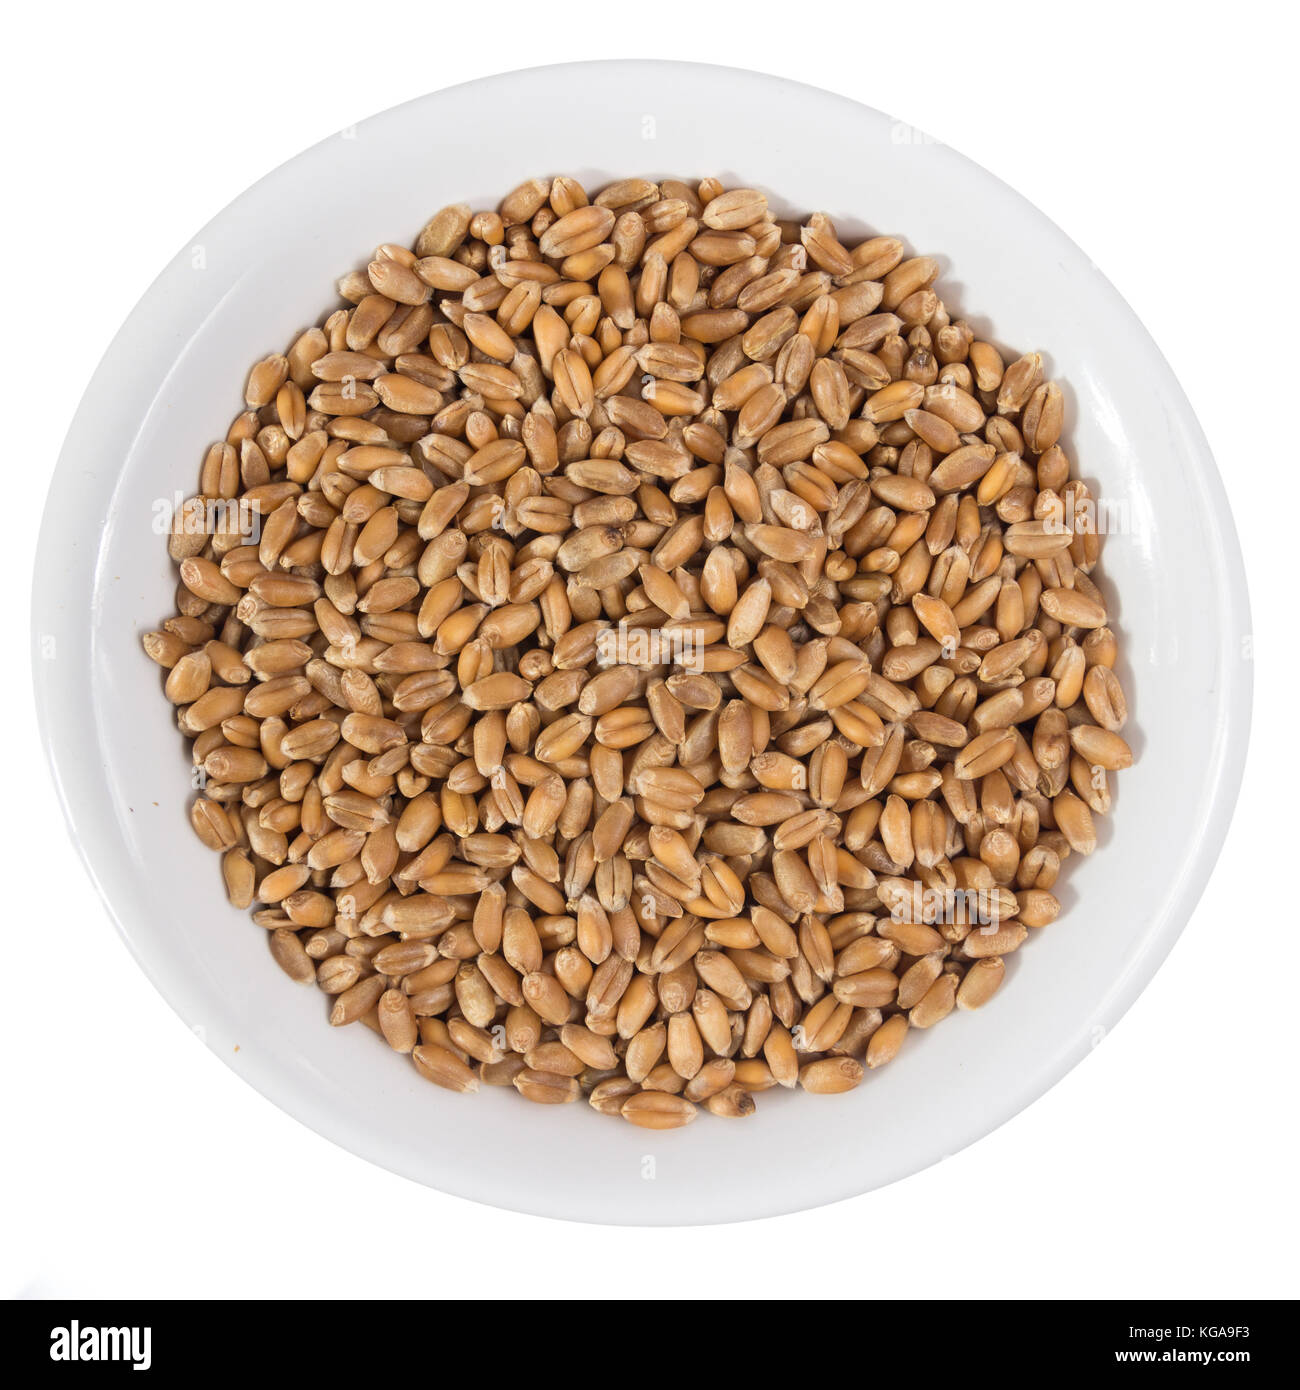 https://c8.alamy.com/compes/kga9f3/triticum-aestivum-es-el-nombre-cientifico-de-cereal-de-trigo-grano-tambien-conocido-como-trigo-espanol-y-portugues-vista-superior-de-granos-en-tazon-de-ceramica-kga9f3.jpg